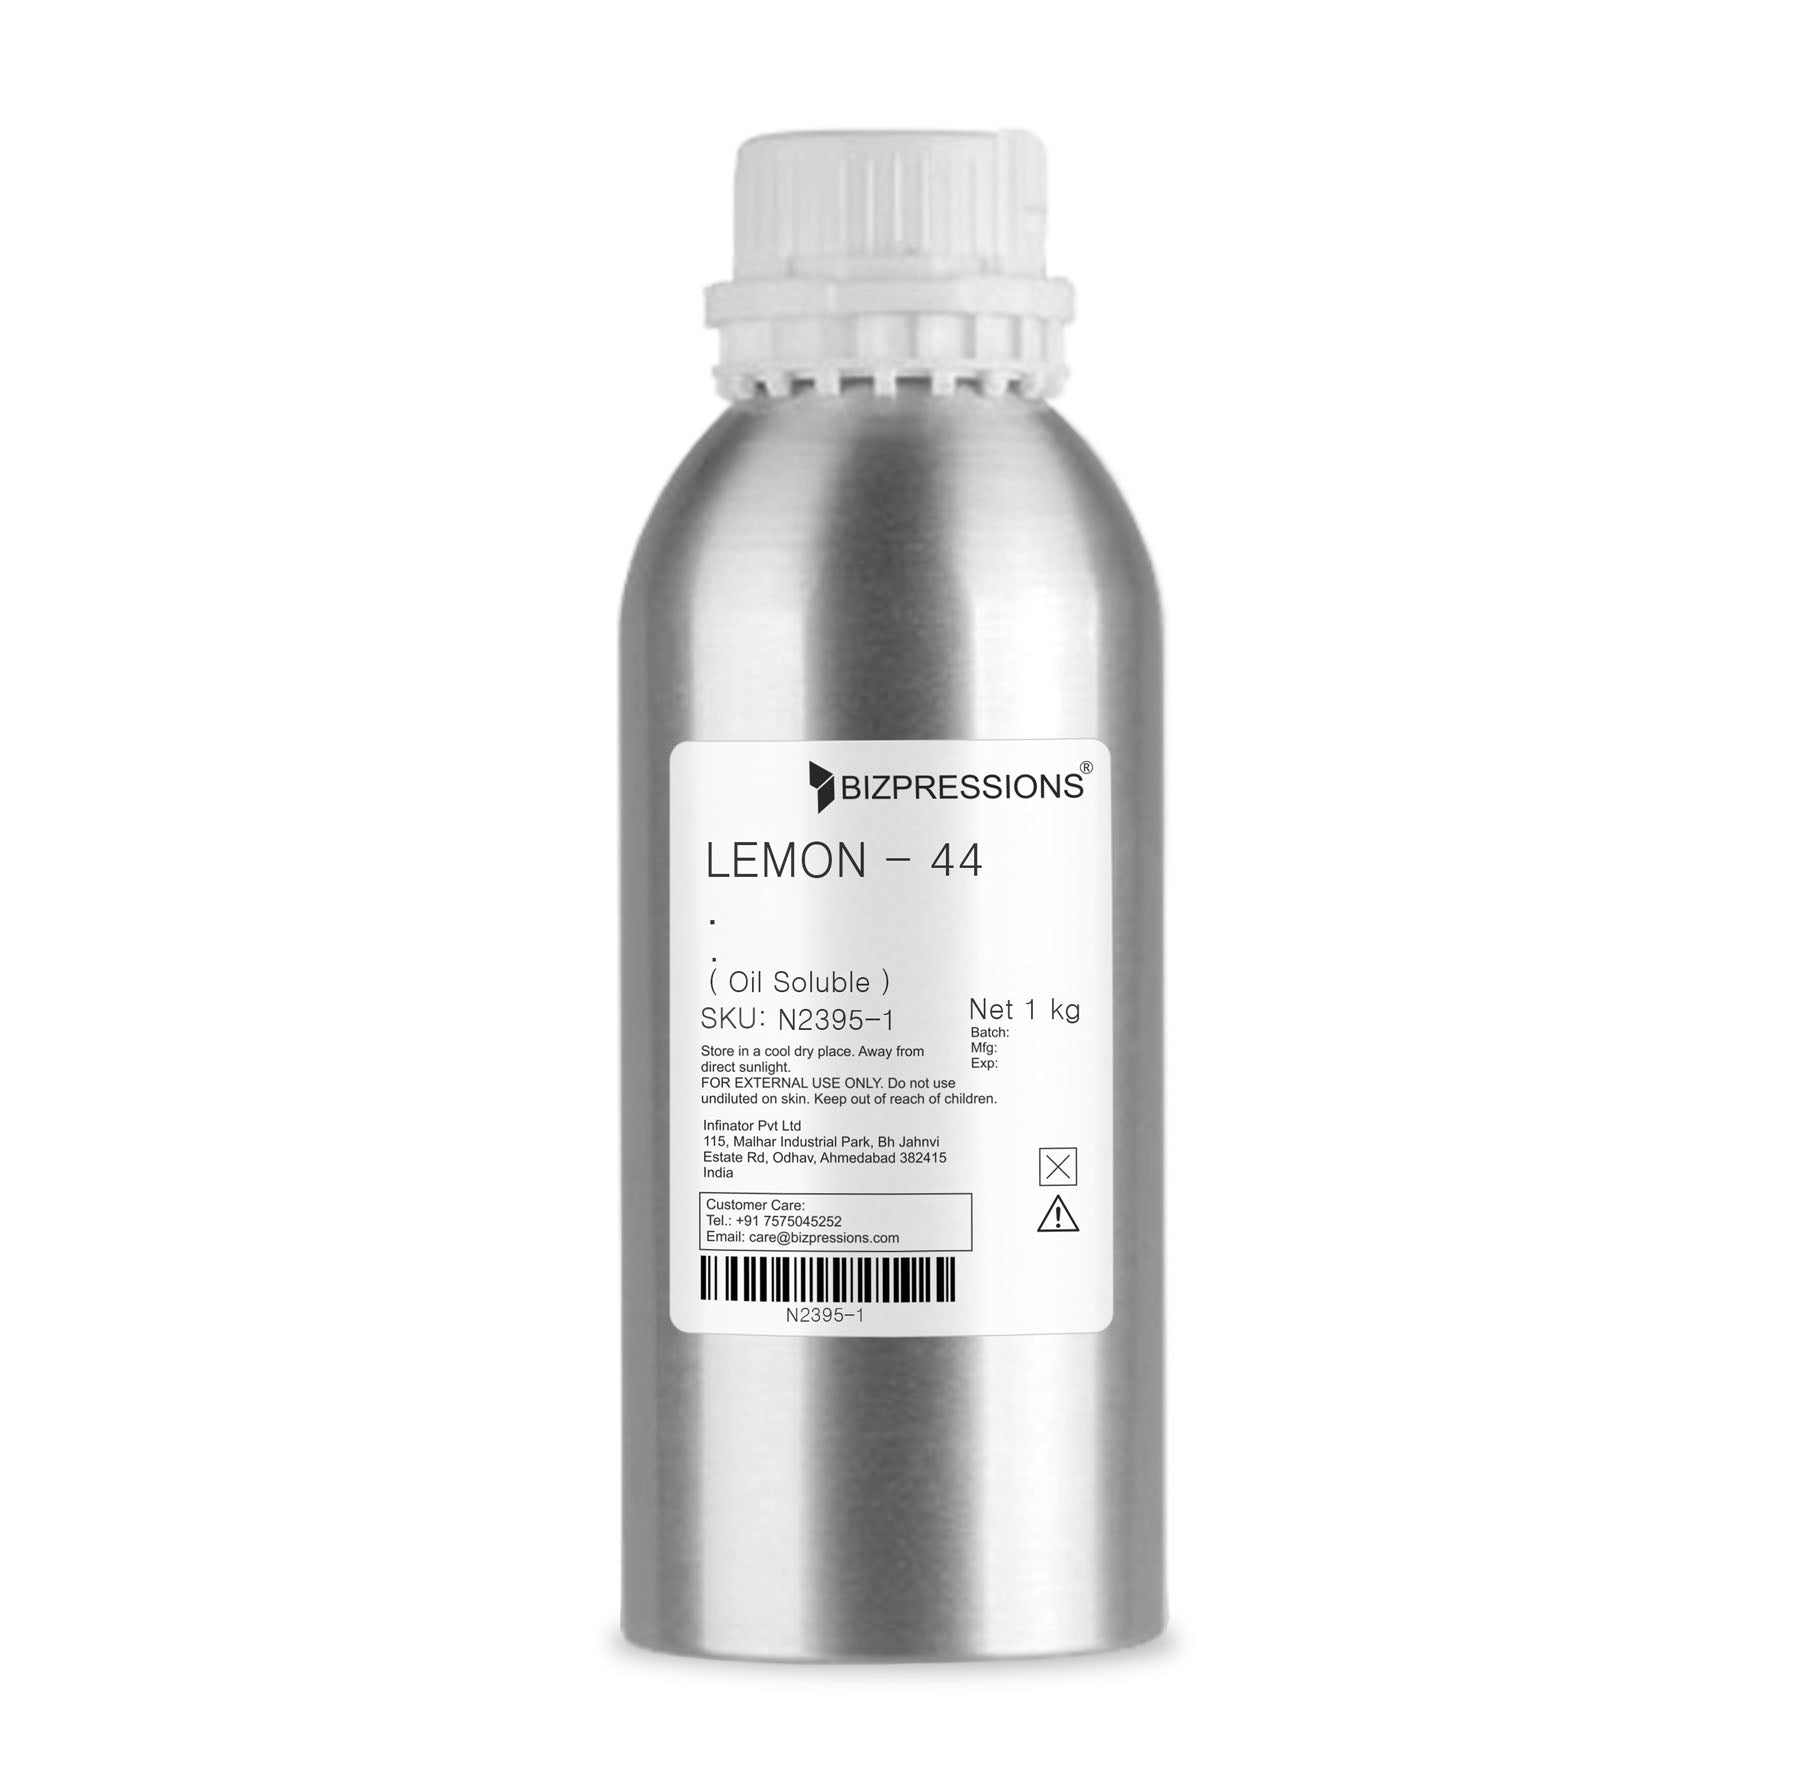 LEMON - 44 - Fragrance ( Oil Soluble ) - 1 kg